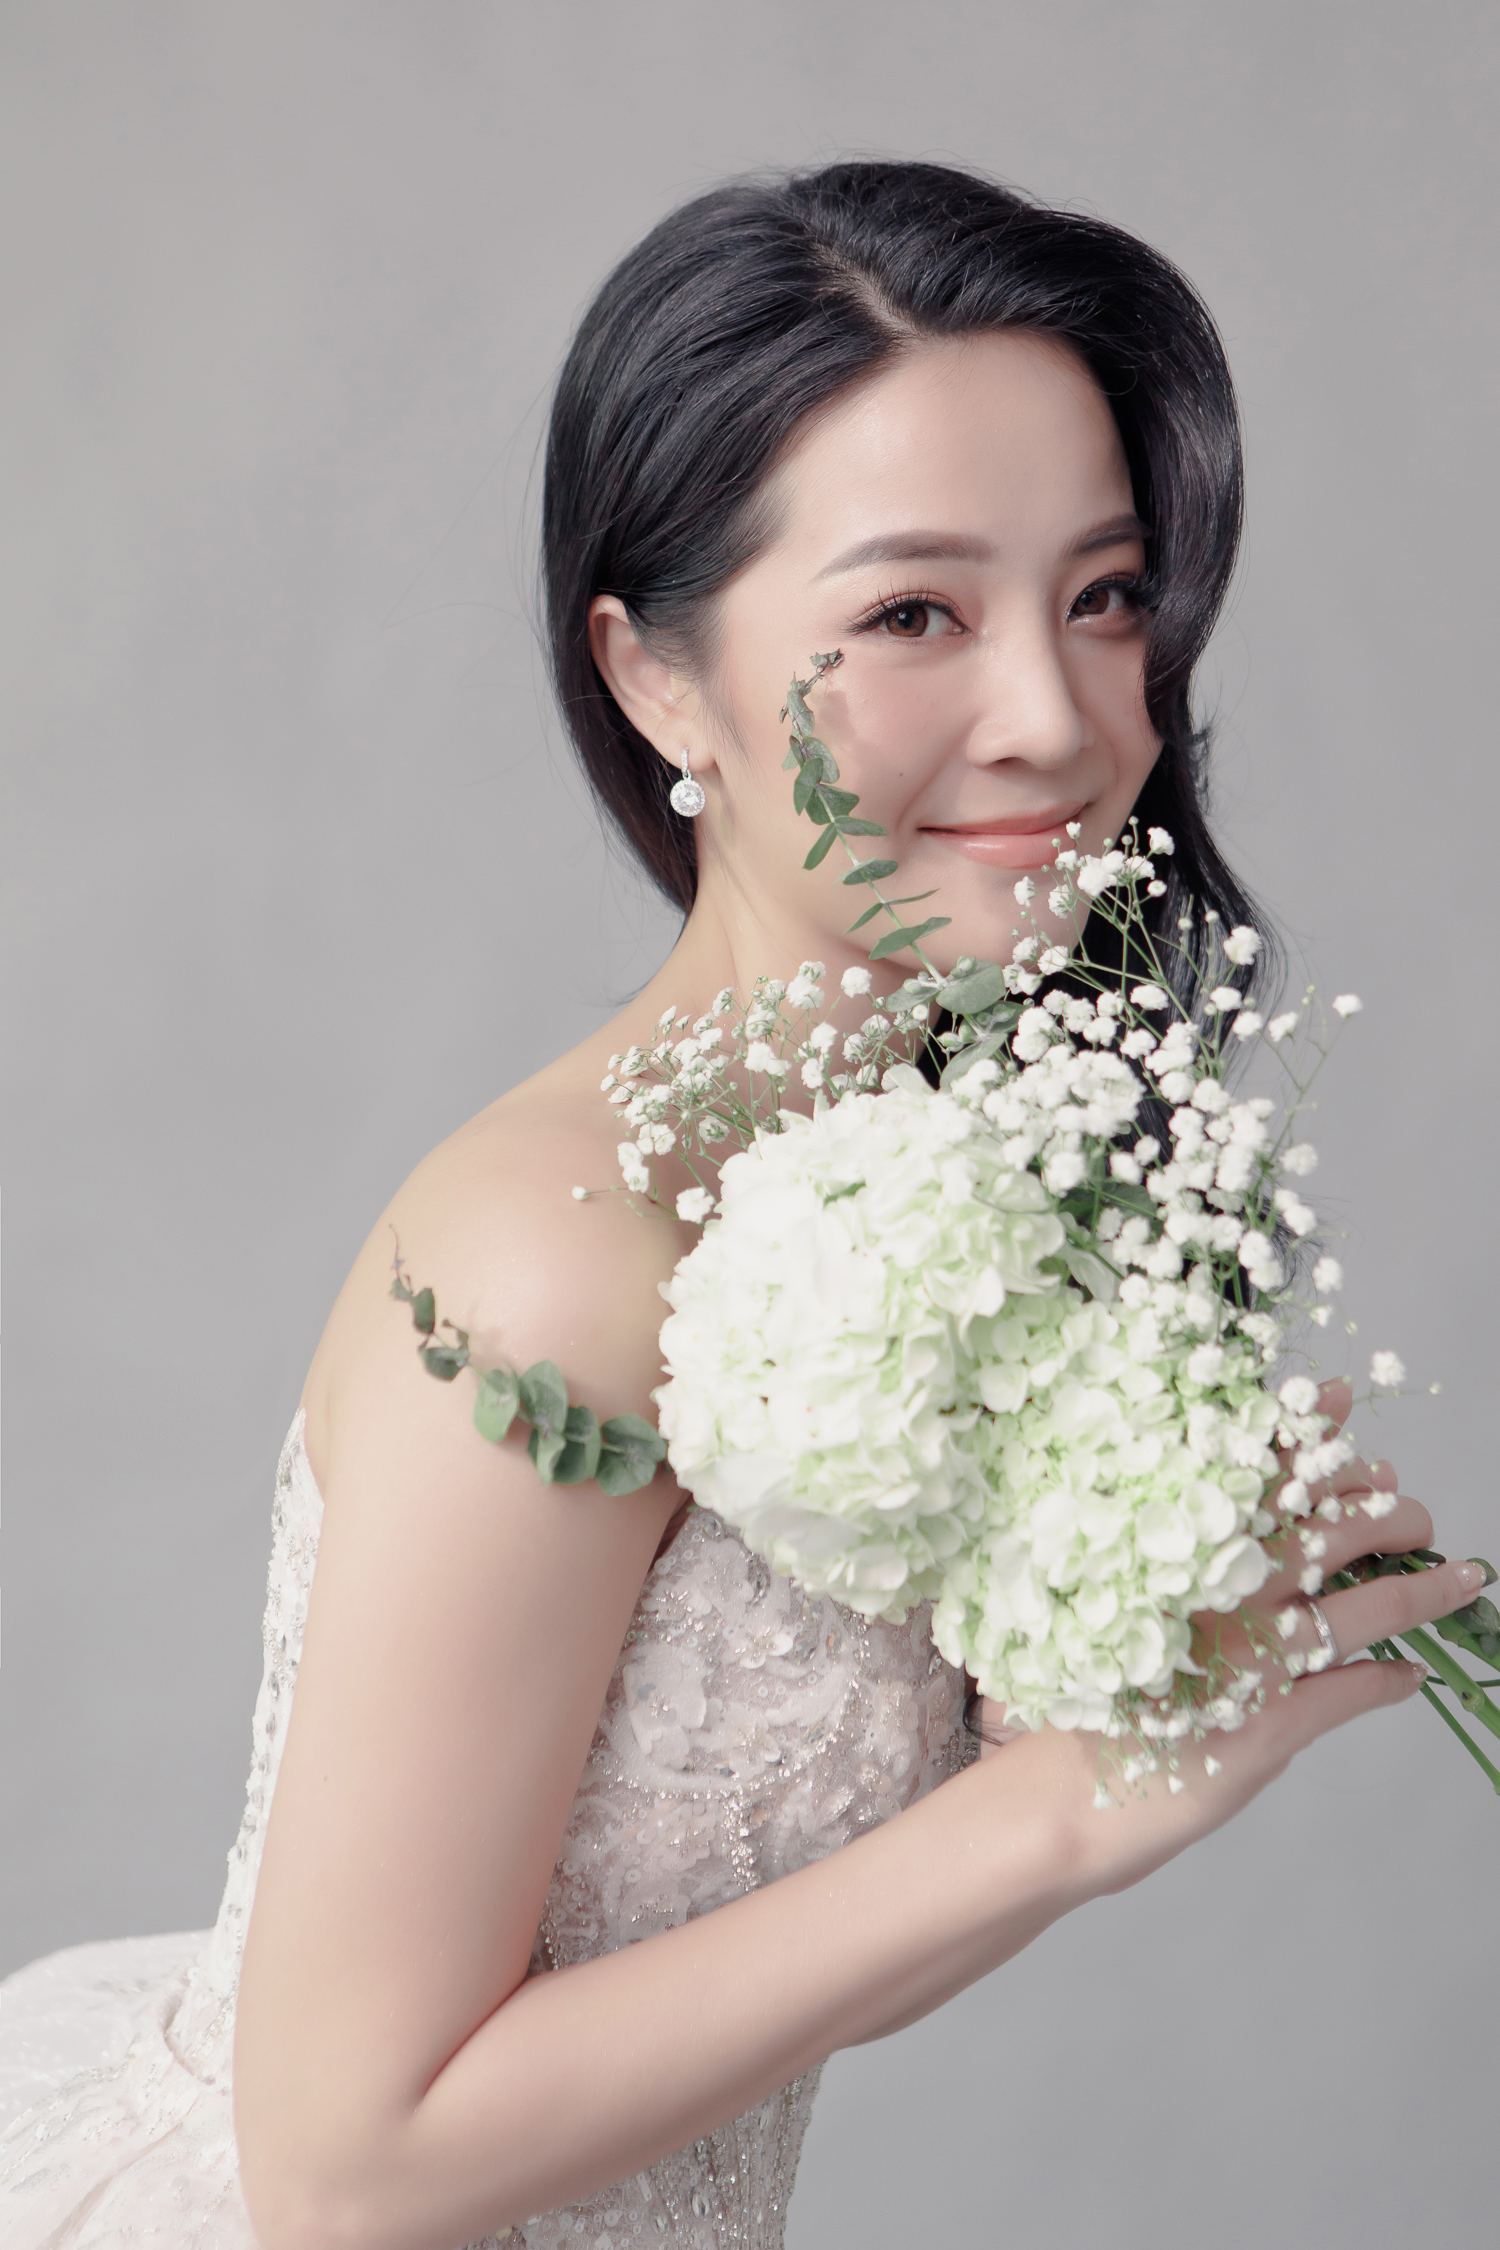 Hé lộ bộ ảnh cưới của Karen Nguyễn cùng ông xã: Áo cưới được đính kết hơn 1000 viên pha lê - ảnh 9